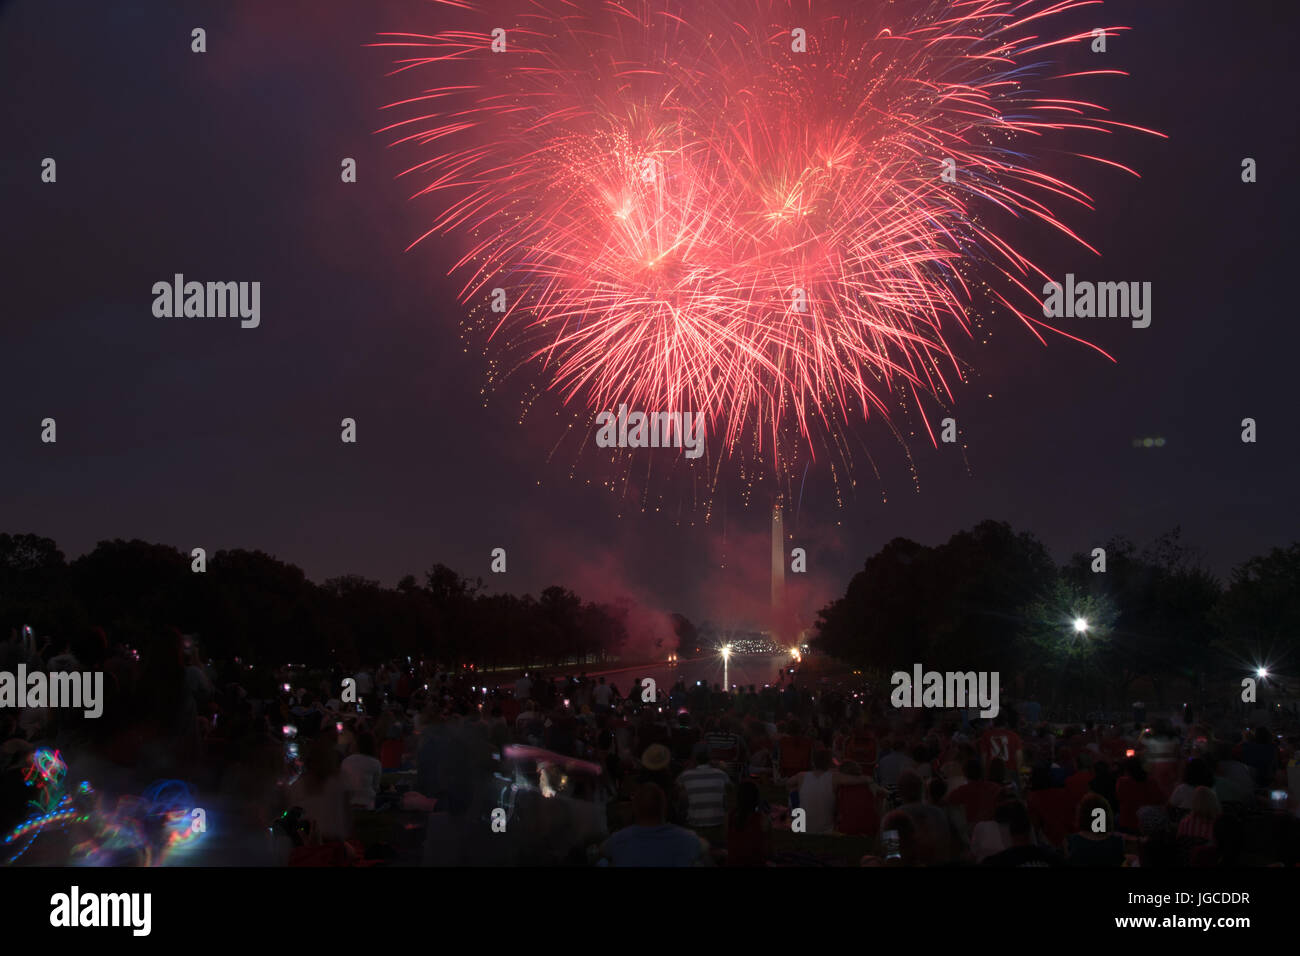 Das Washington Monument während des großen Finales; 4. Juli Feuerwerk; 2017, Washington DC, Vereinigte Staaten Stockfoto